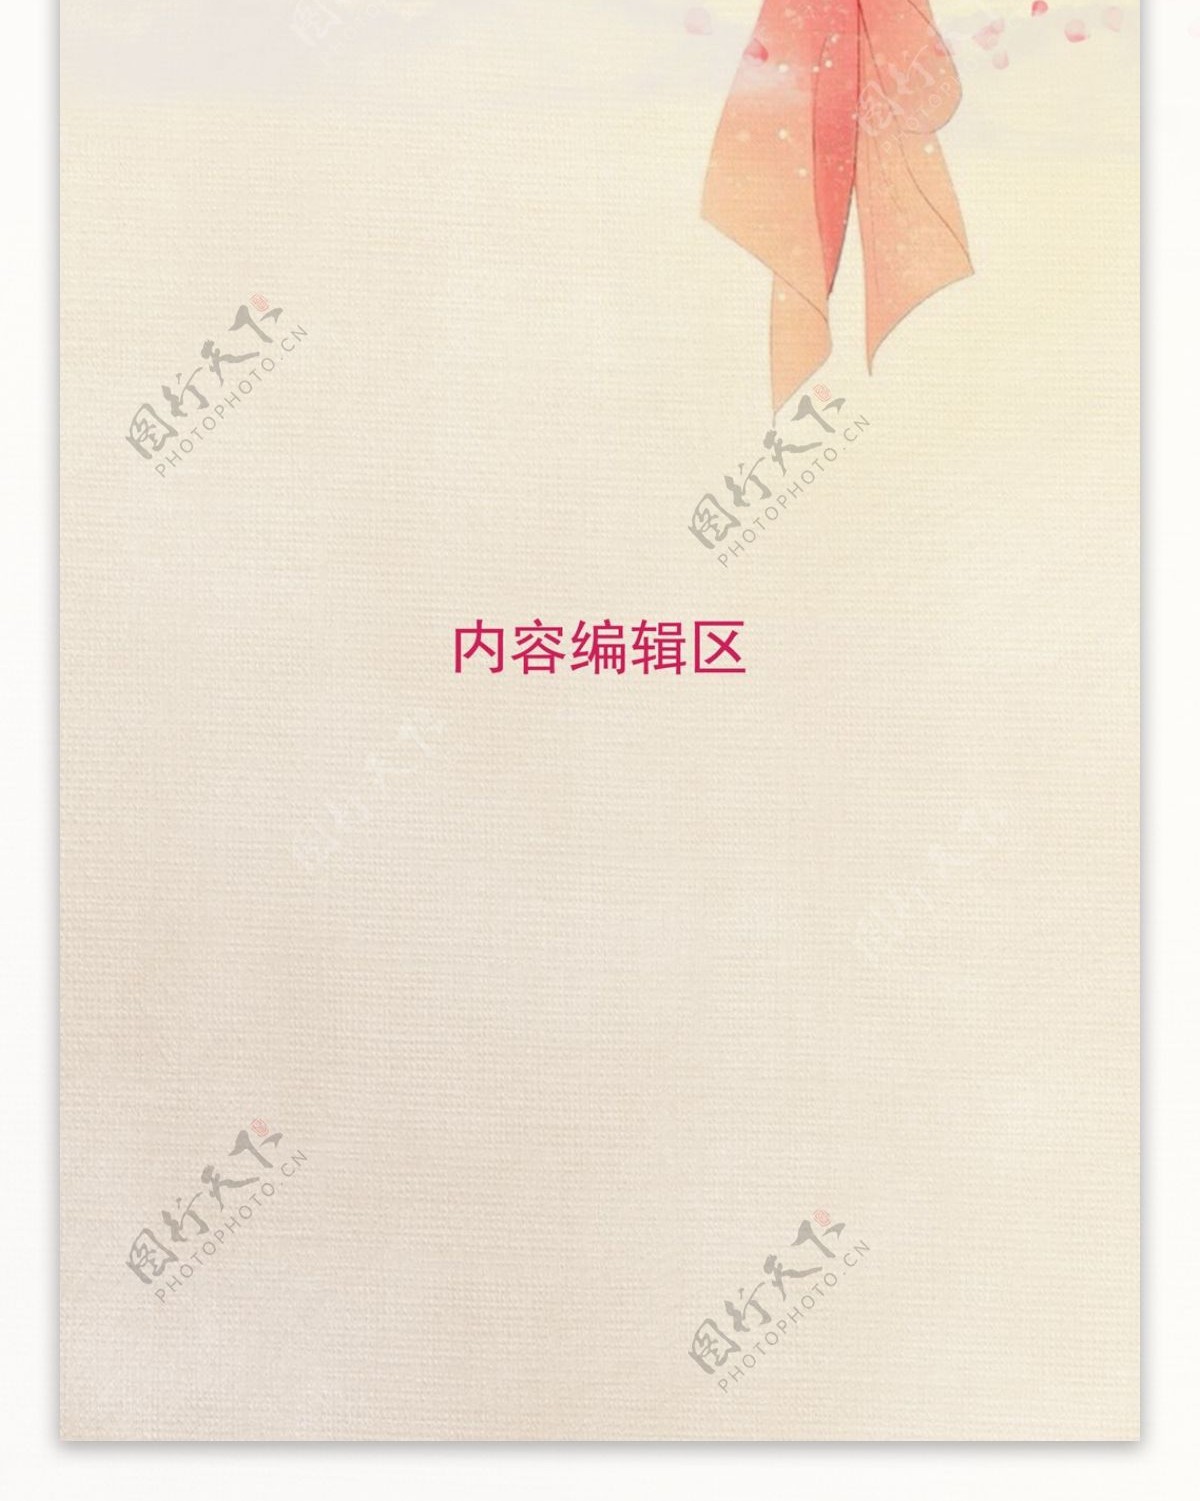 中国古风展架模板设计画面素材海报